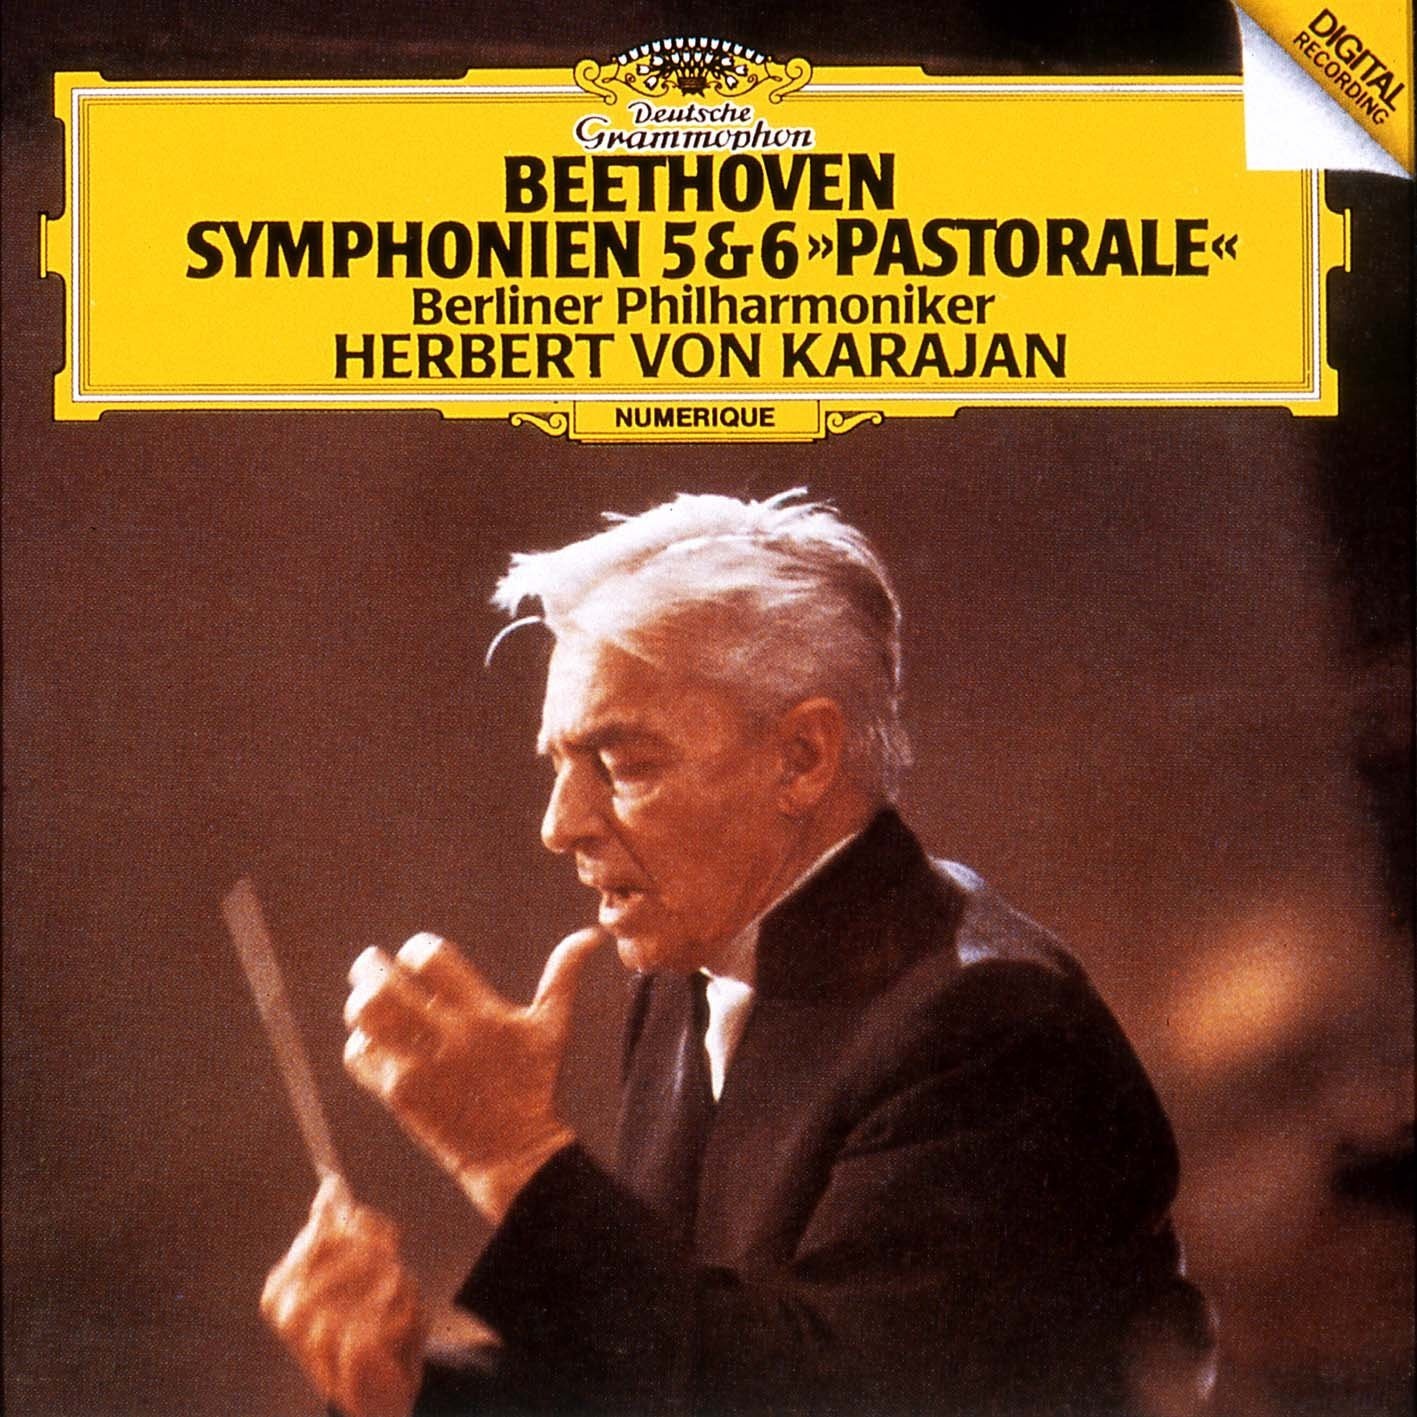 Symphonie Nr. 6 F-dur, op. 68 'Pastorale': I. Erwachen heiterer Empfindungen bei der Ankunft auf dem Lande (Allegro ma non troppo)